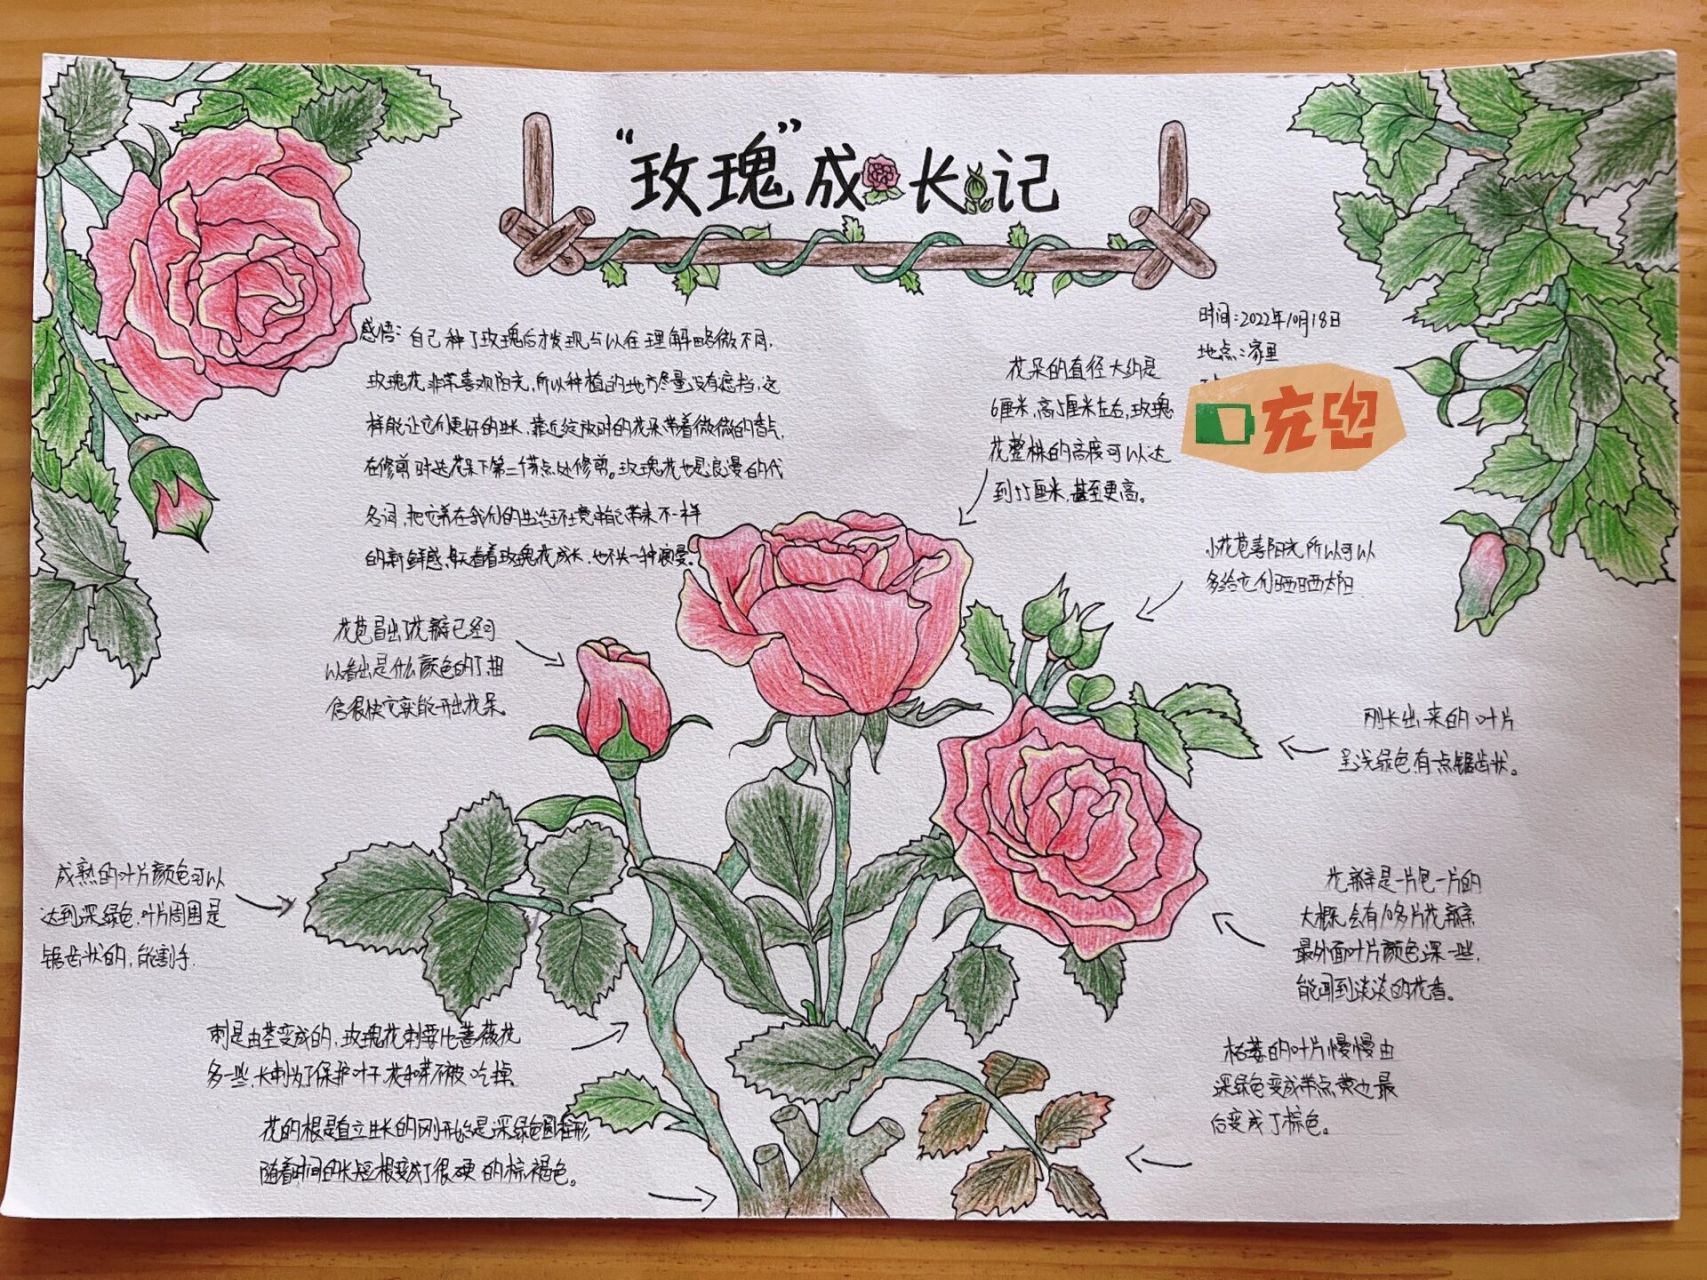 玫瑰花的记录卡的内容图片